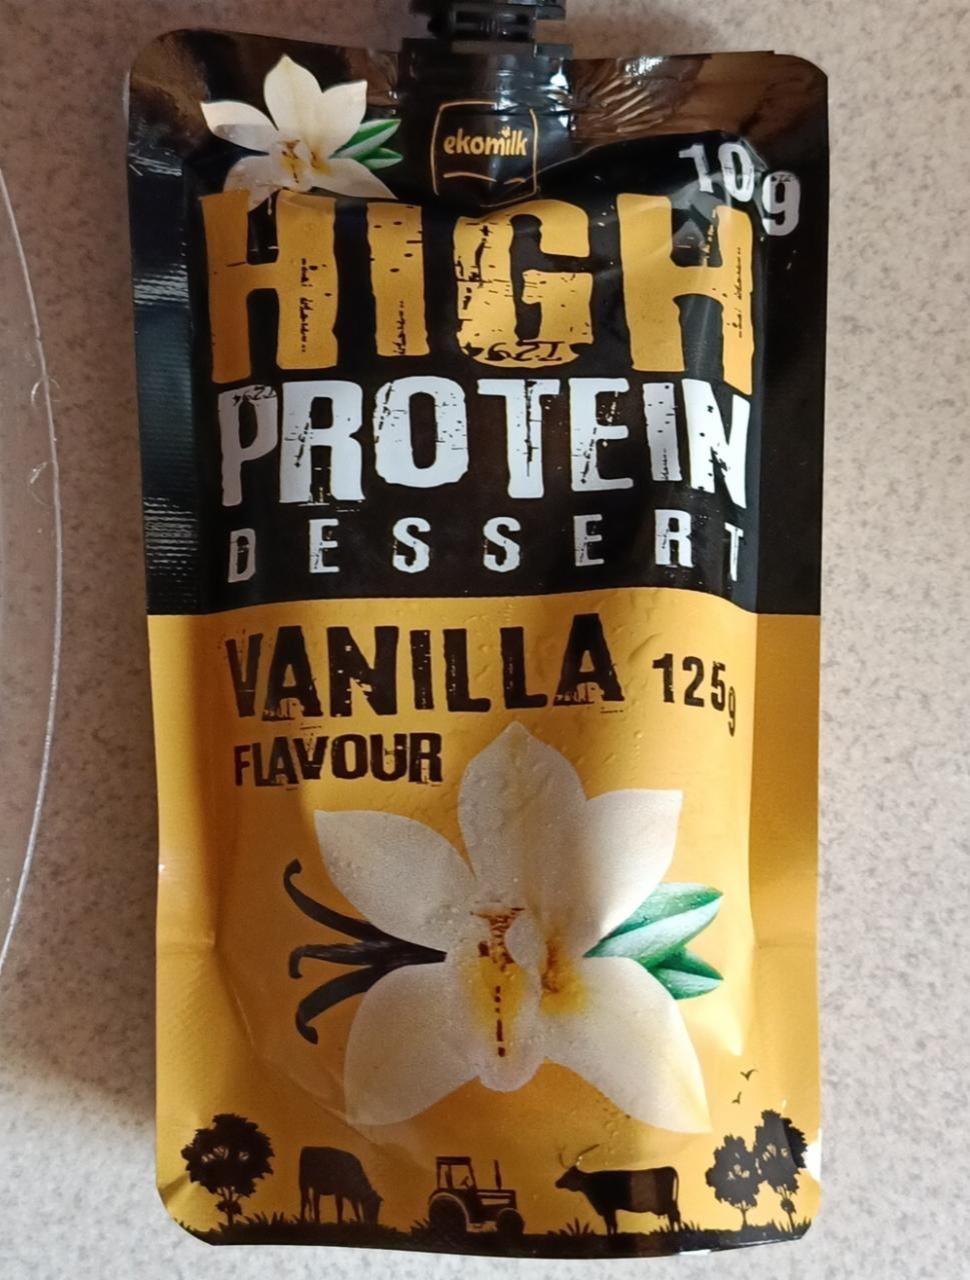 Zdjęcia - high protein dessert vanilla ekomilk